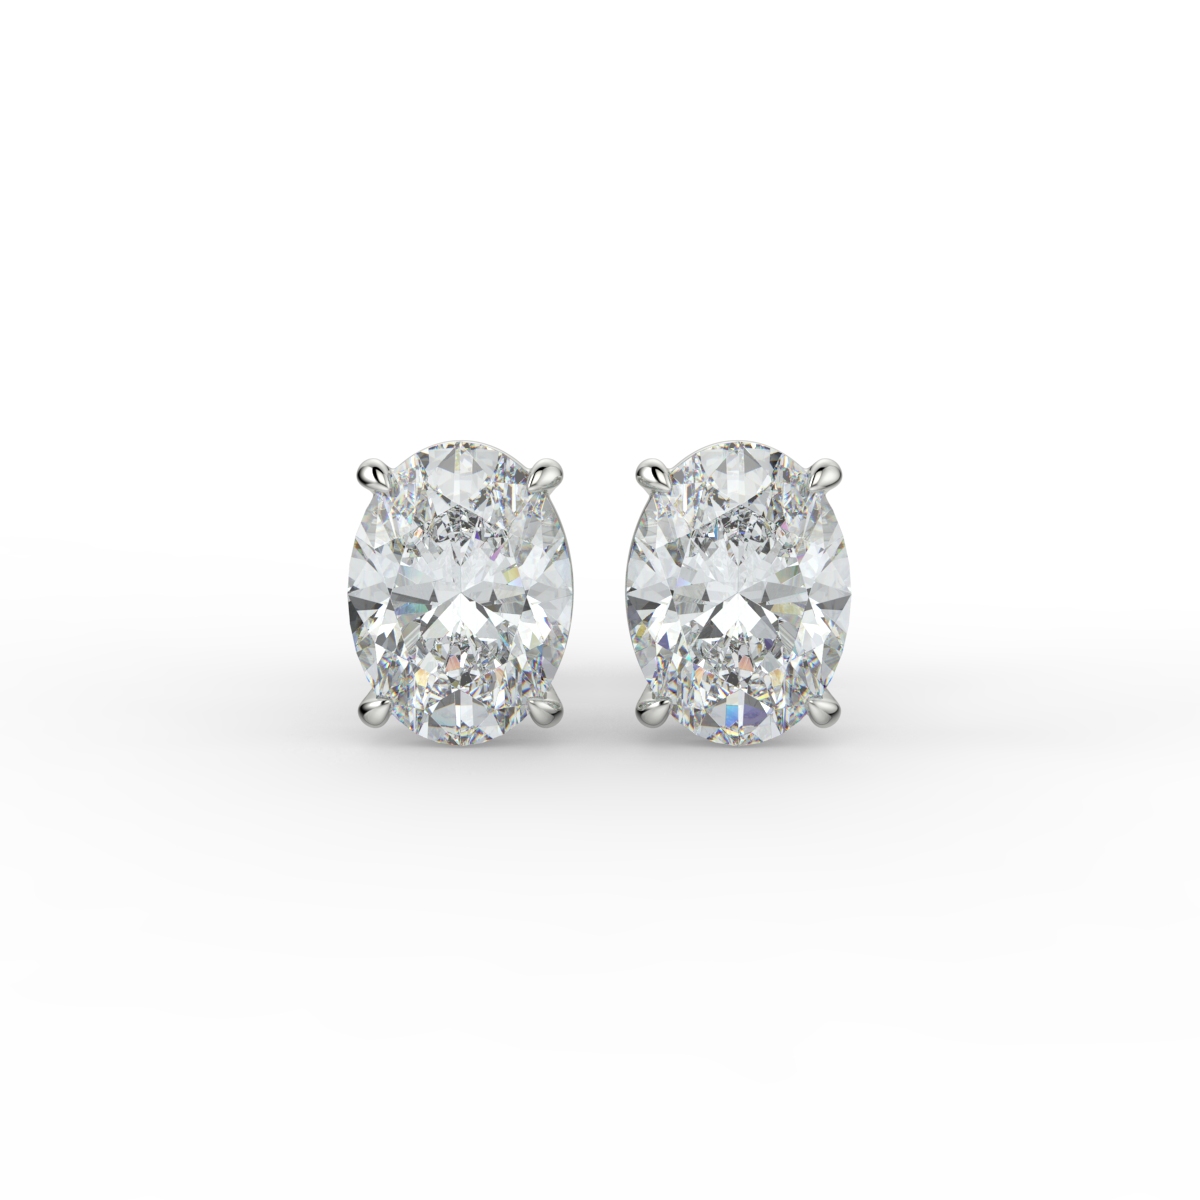 Oval Diamond Studs Earrings Platinum - KATIE